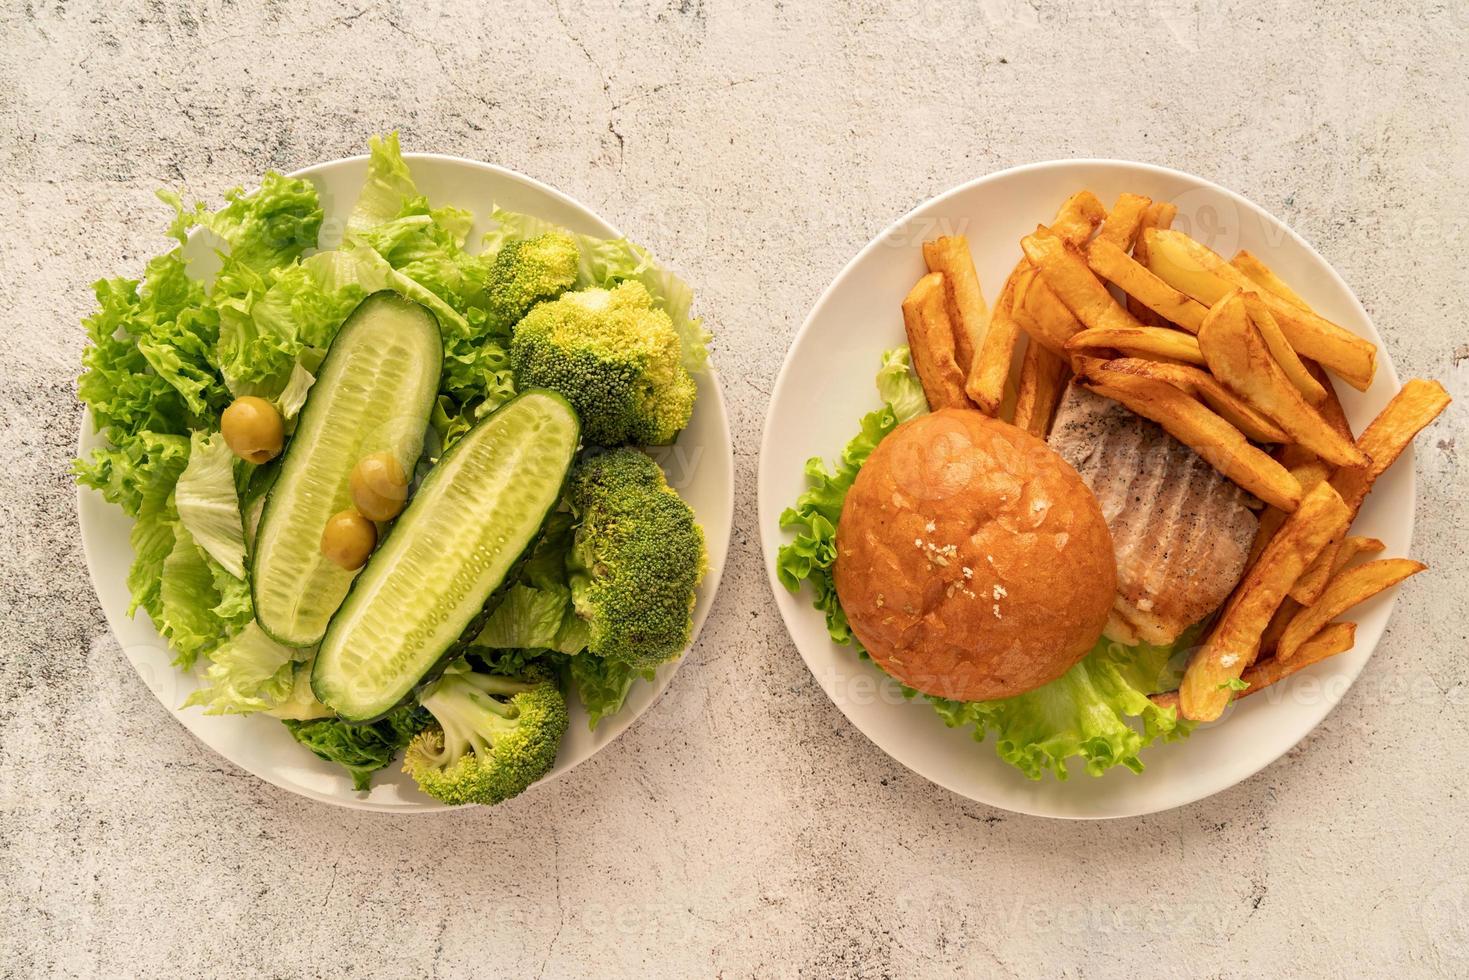 Platos con comida rápida y comida sana, vista superior plana. foto